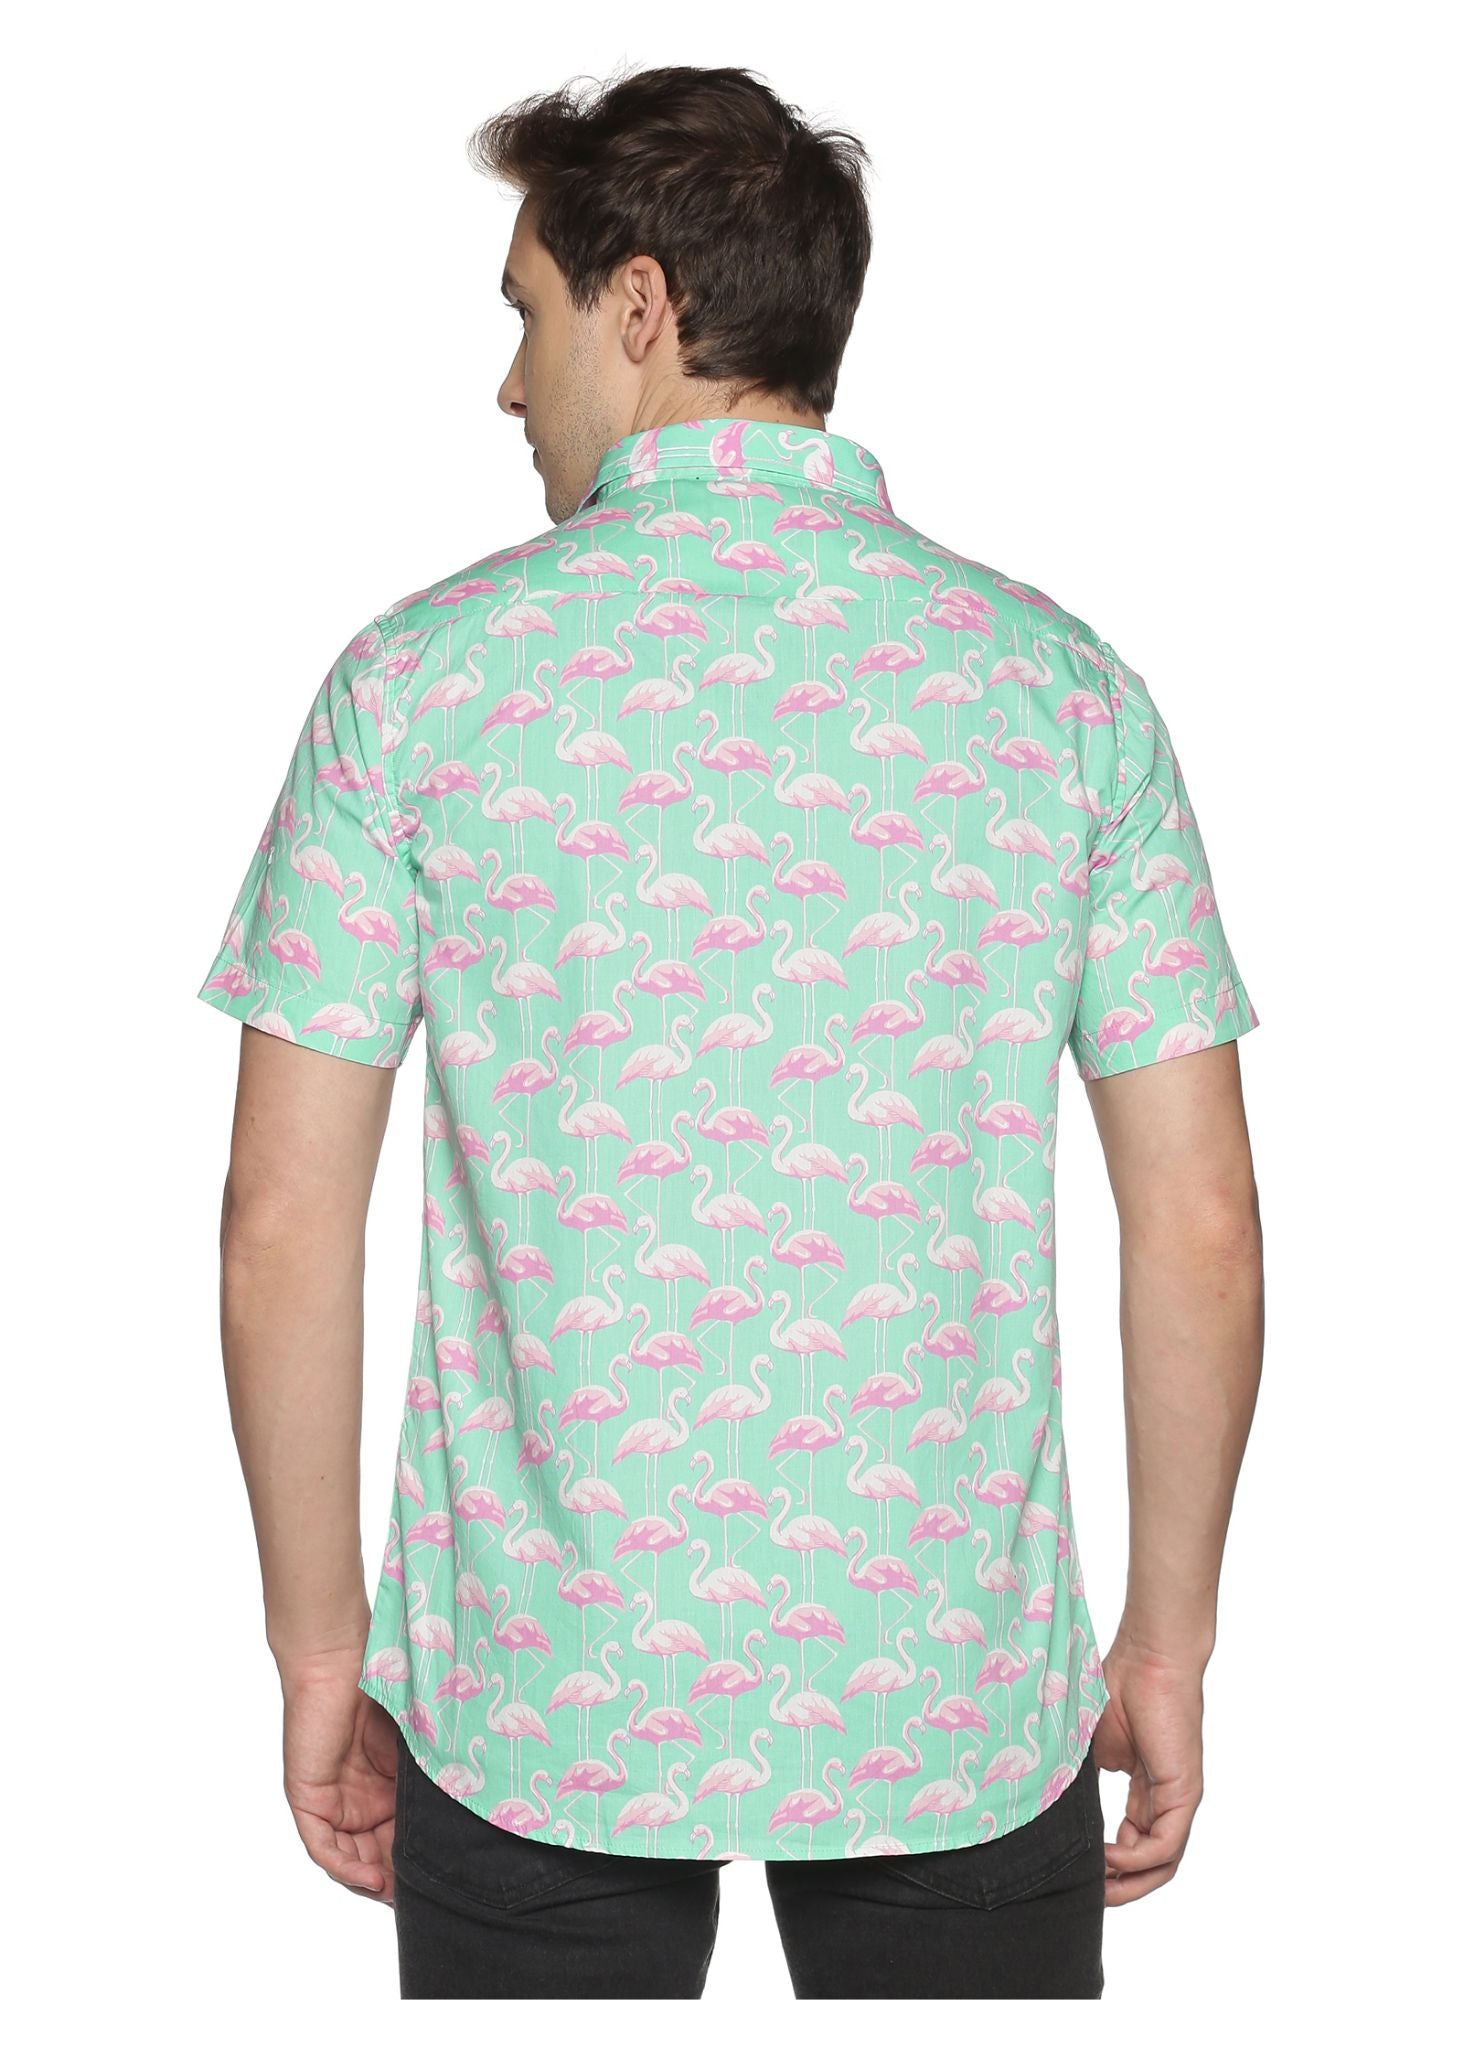 Mambos Printed Shirt - Tusok